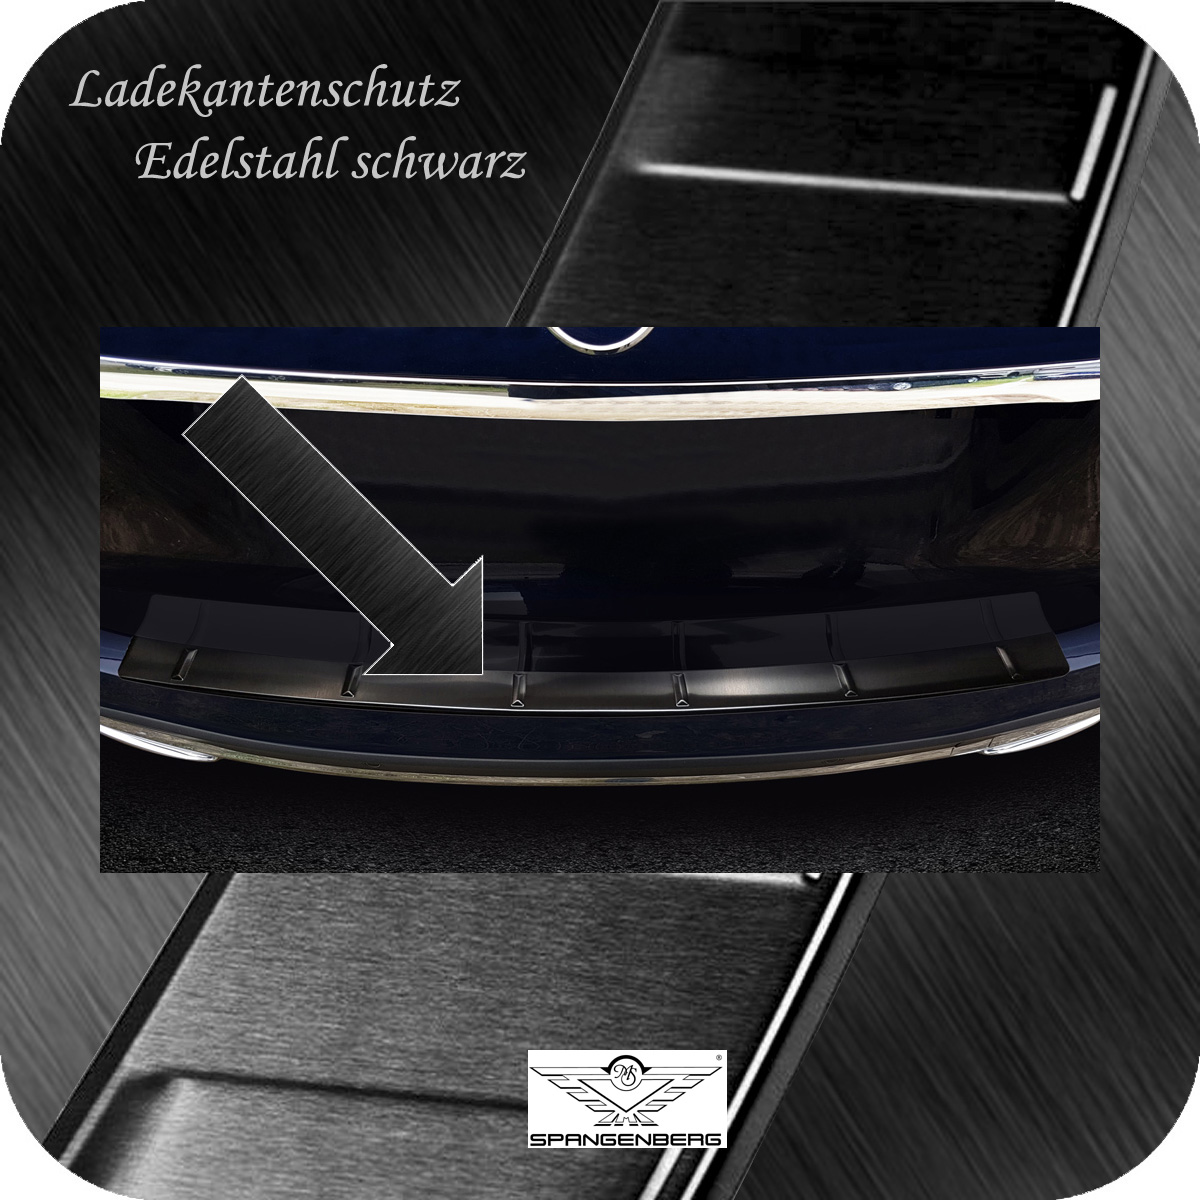 Ladekantenschutz Edelstahl schwarz Mercedes GLE II V167 10.18- auch AMG  3245218